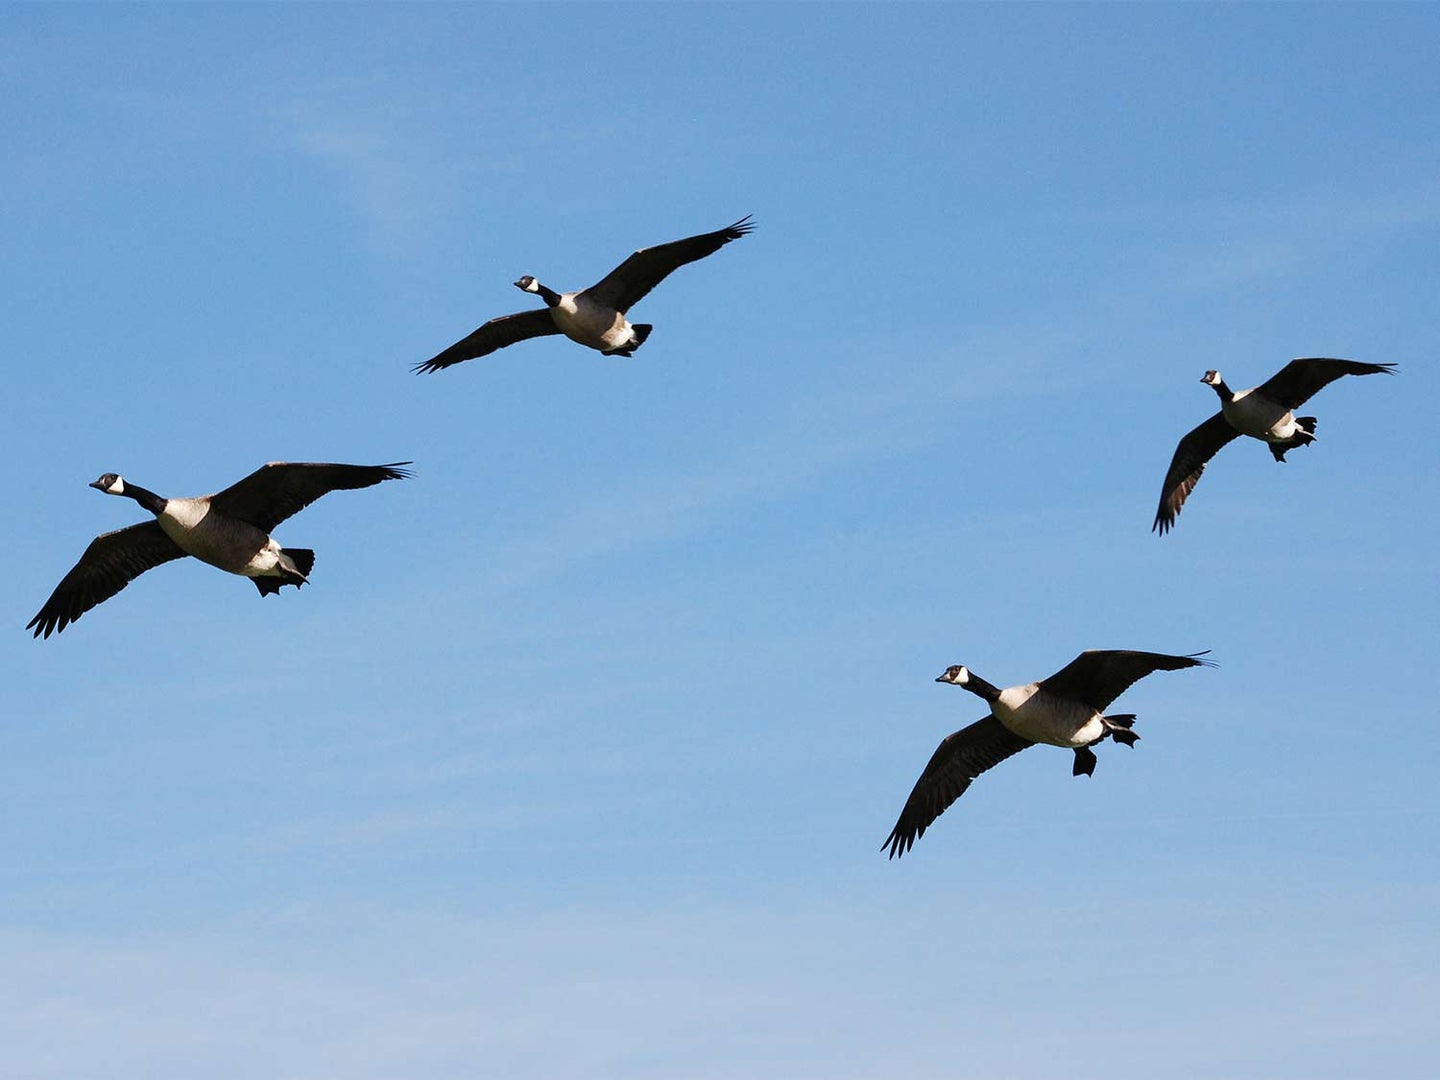 Four late-season Canada geese approach the decoys.